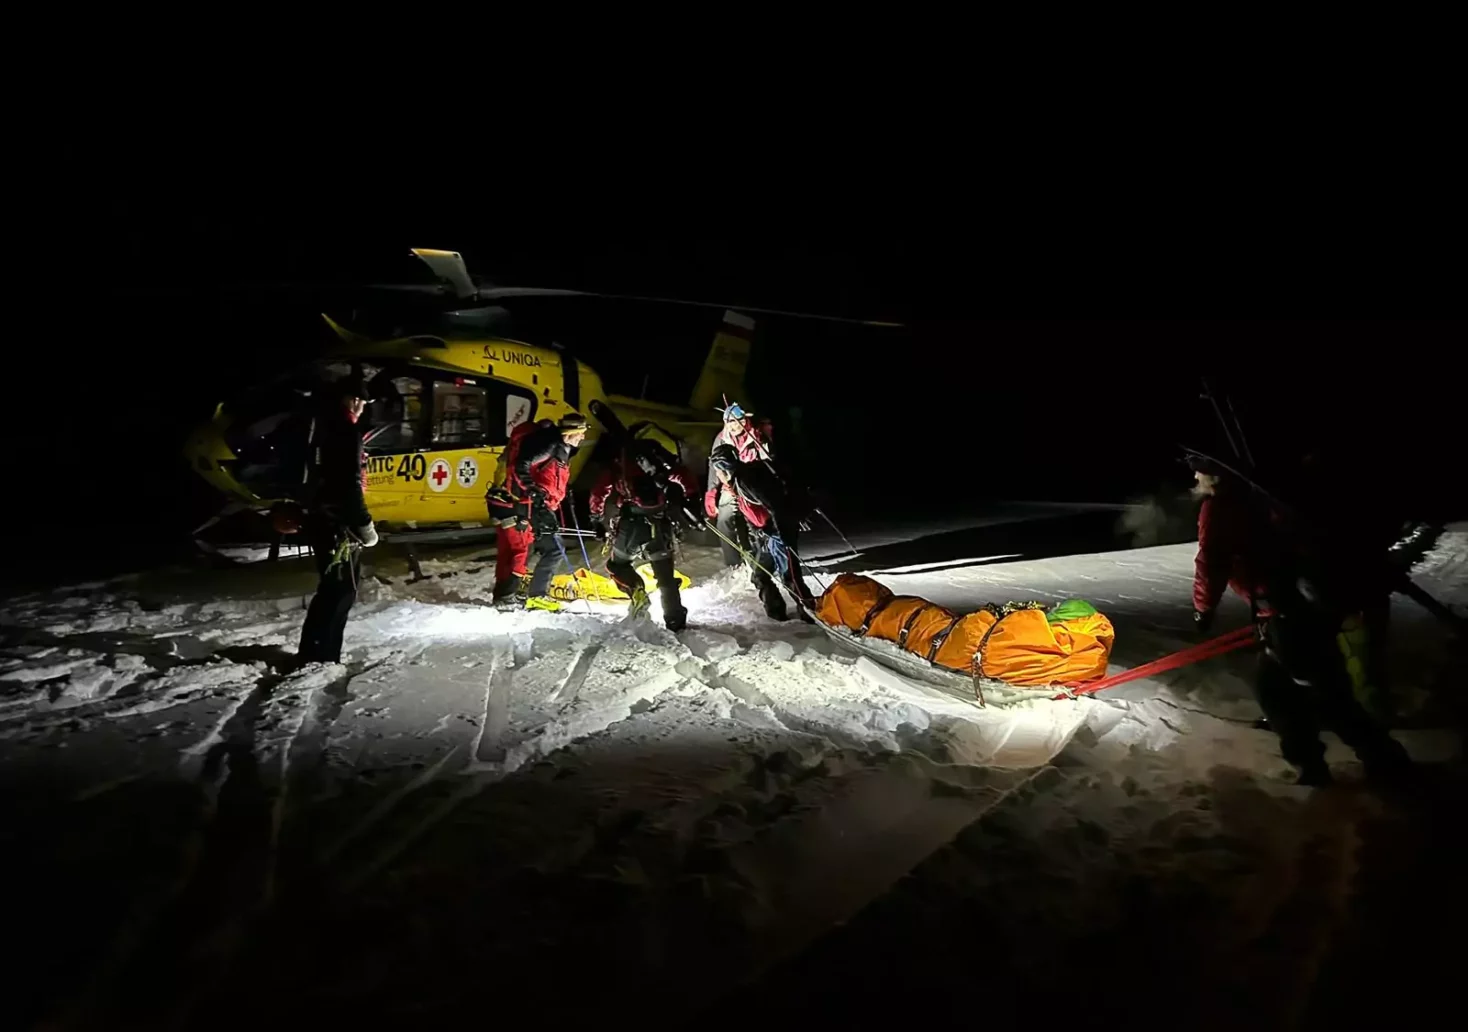 Foto in Beitrag von 5min.at: Zu sehen ist die Rettung des schwer verletzten Skitourengehers.